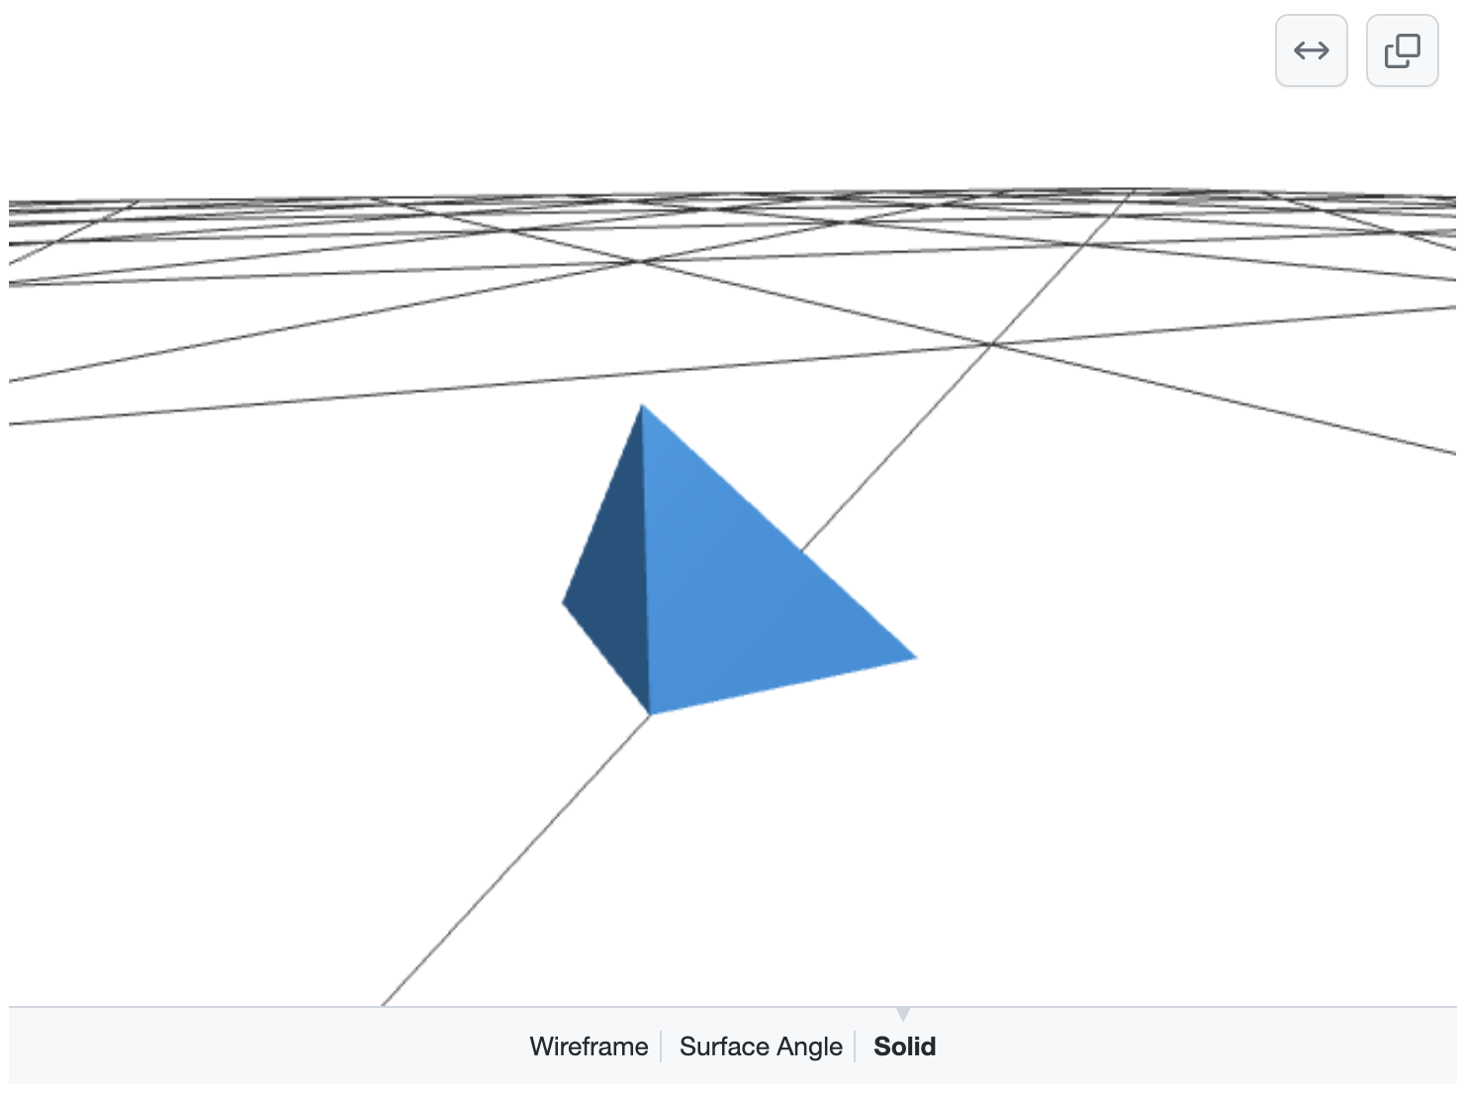 Снимок экрана: трехмерная модель синей пирамиды на вершине сетки черных линий на белой земле. Параметры выбора "Wireframe", "Surface Angle" или "Solid" отображаются внизу.